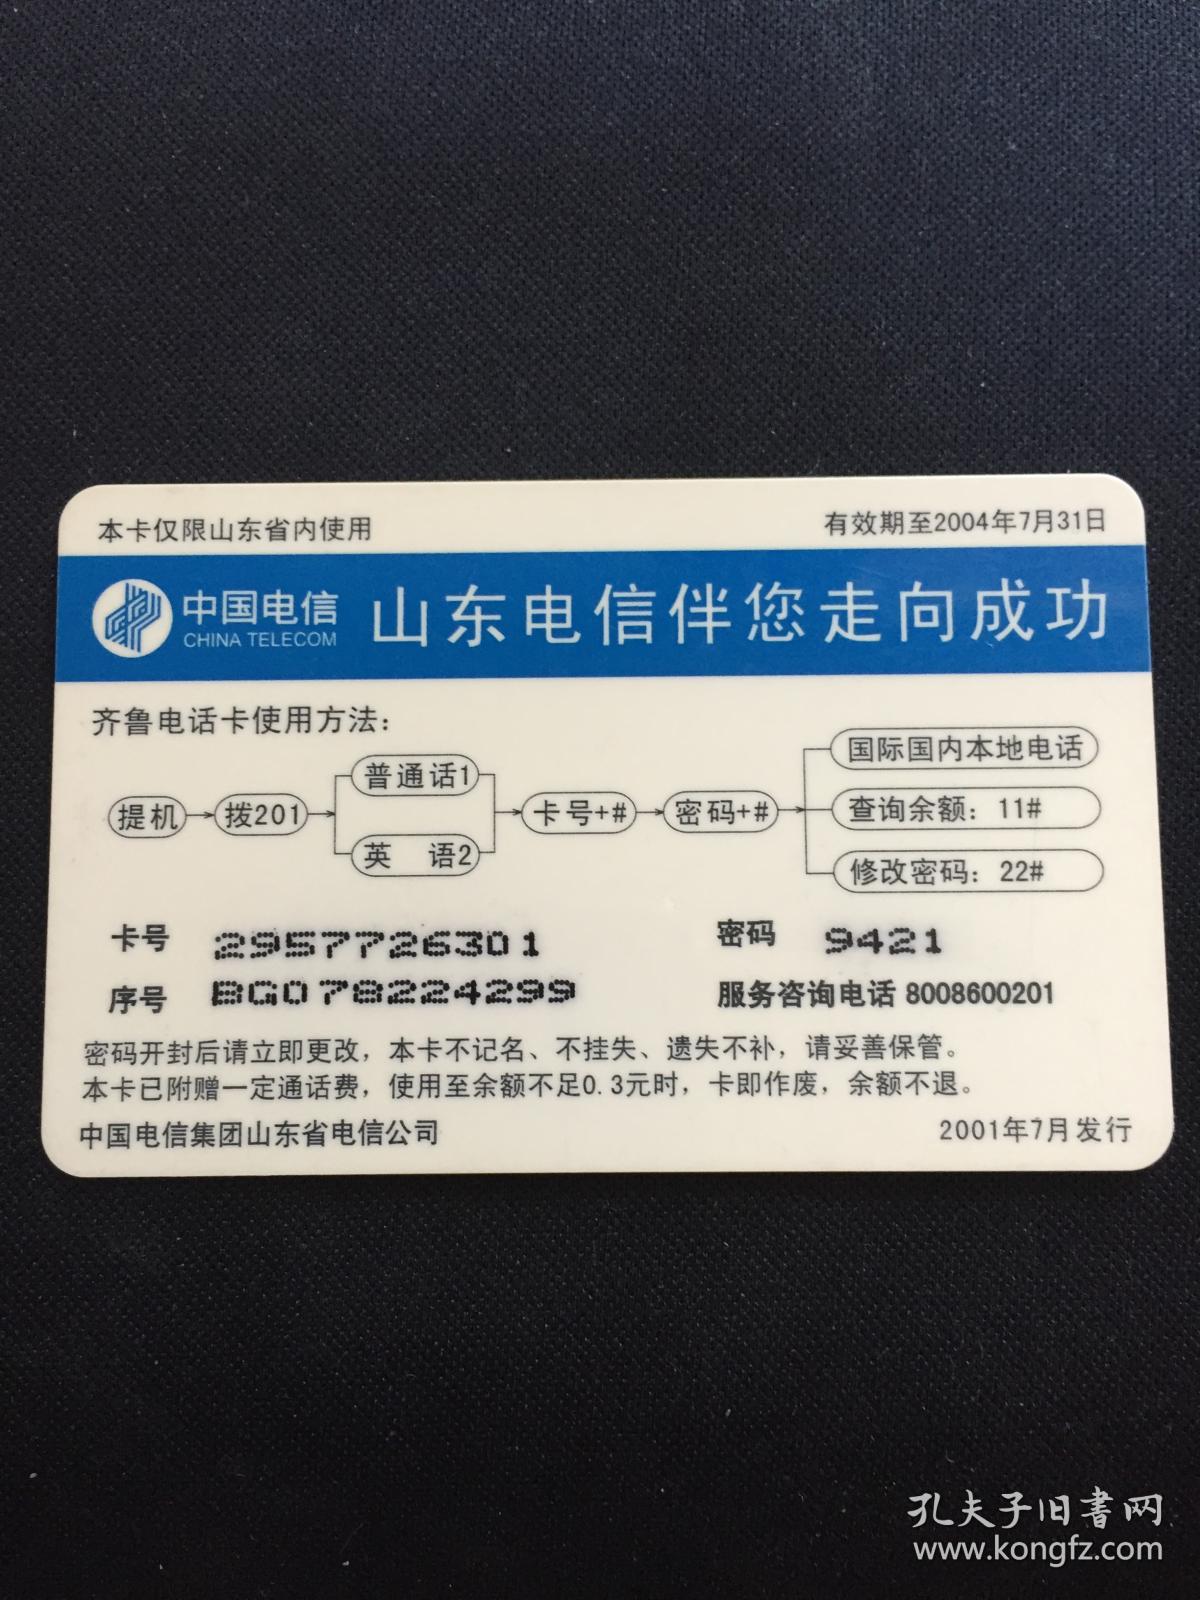 卡片311 水浒卡 水浒电话卡 两头蛇 解珍 ￥20+0.5  齐鲁电话卡 SDSH-3-(12-10)  中国电信